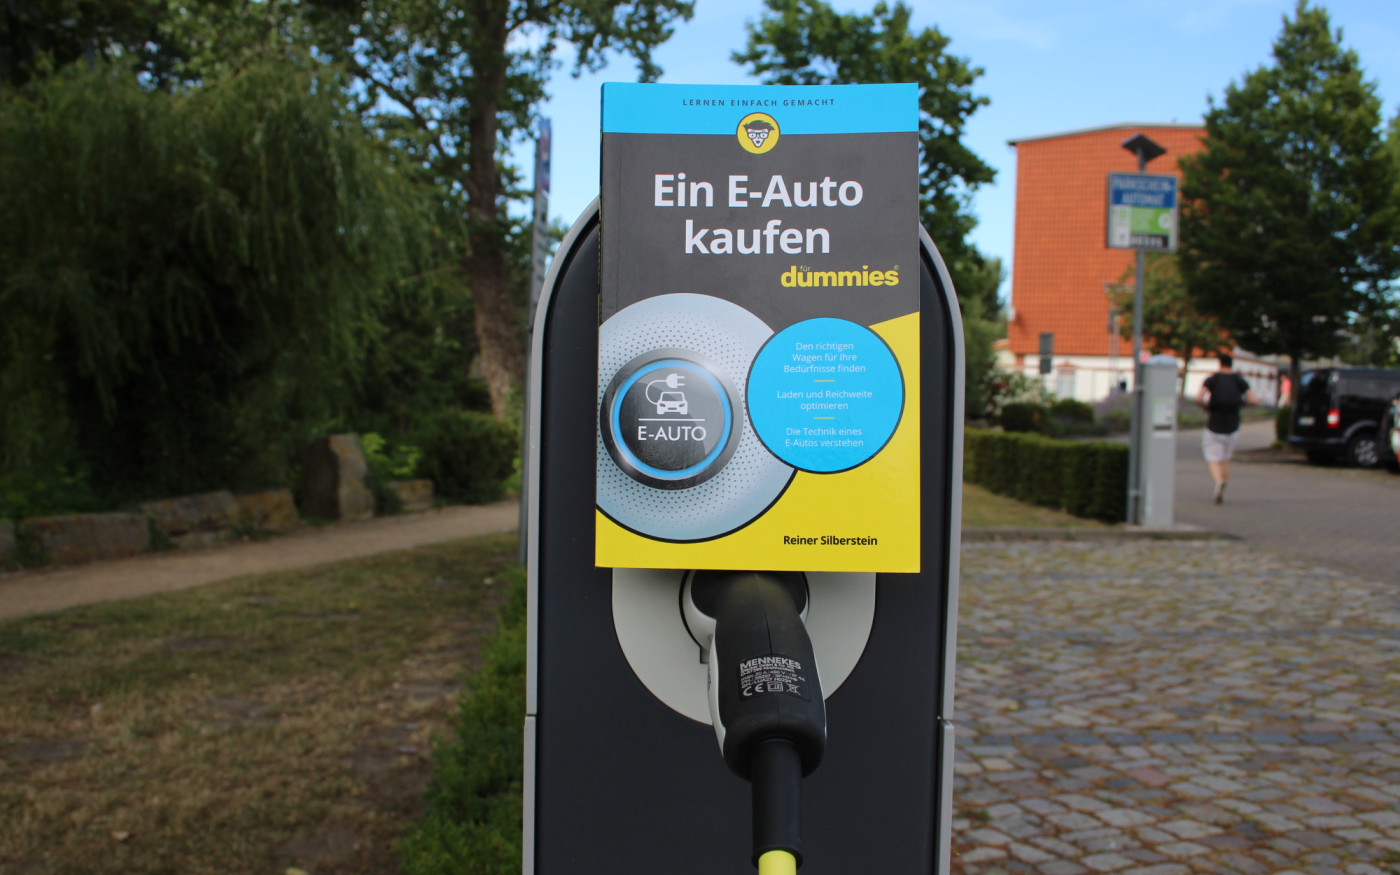 Klimakrise, Benzinpreise, Dieselfahrverbot: Der Calberlaher Reiner Silberstein erklärt in seinem neuen Buch einen Ausweg - das E-Auto